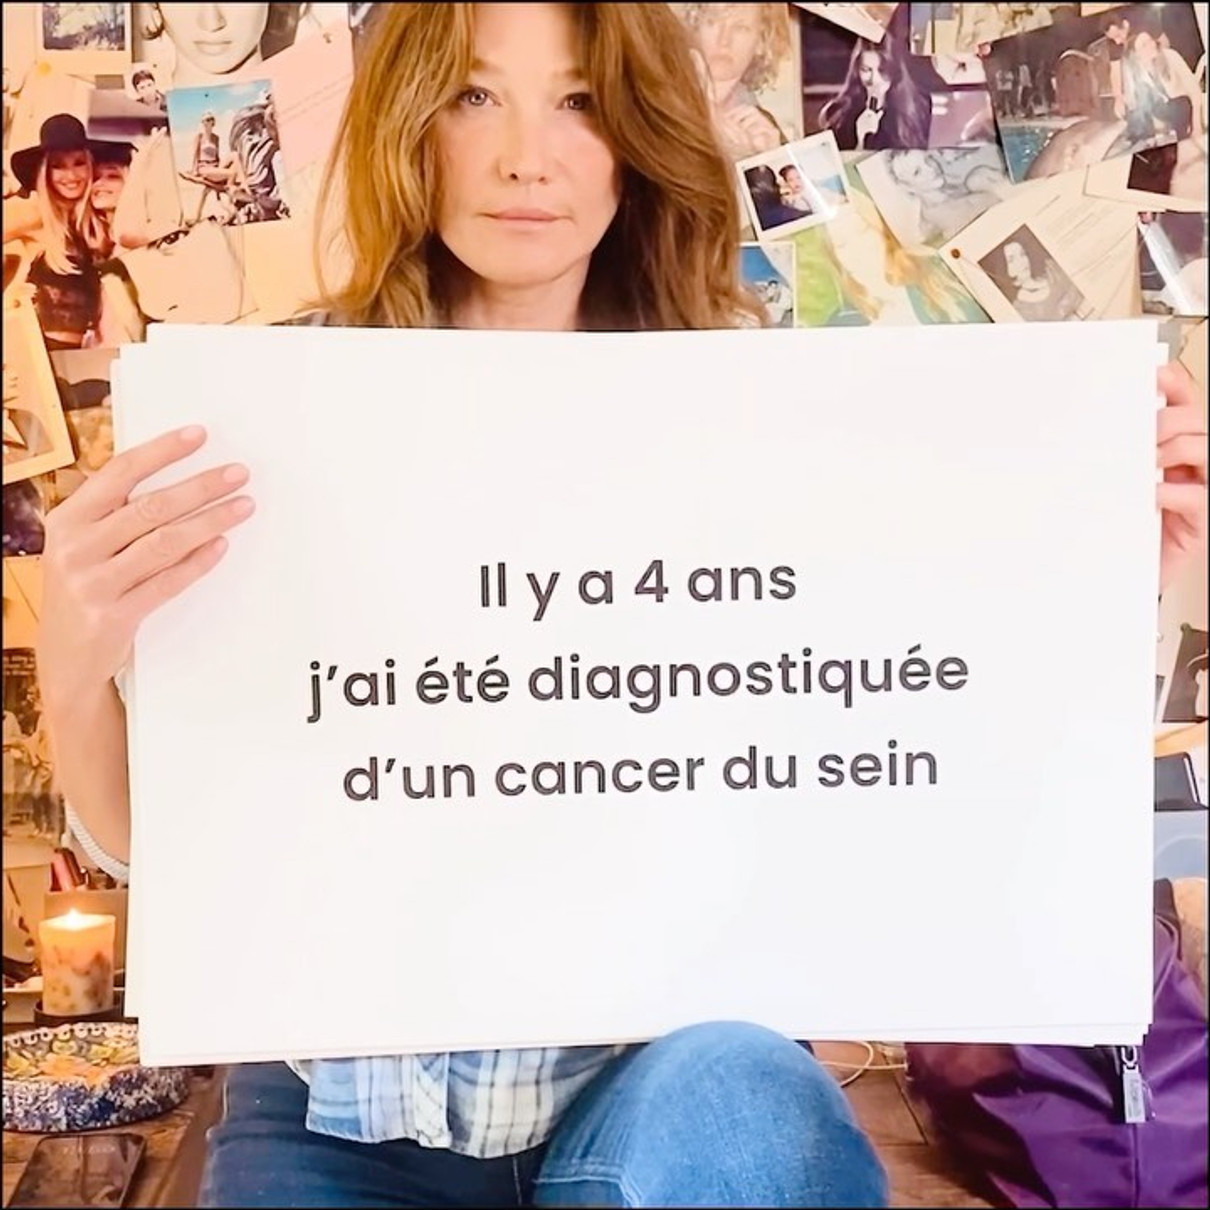 Чотири роки тому в мене було діагностовано рак грудей, -  Карла звернулася до підписників французькою та продублювала повідомлення англійською